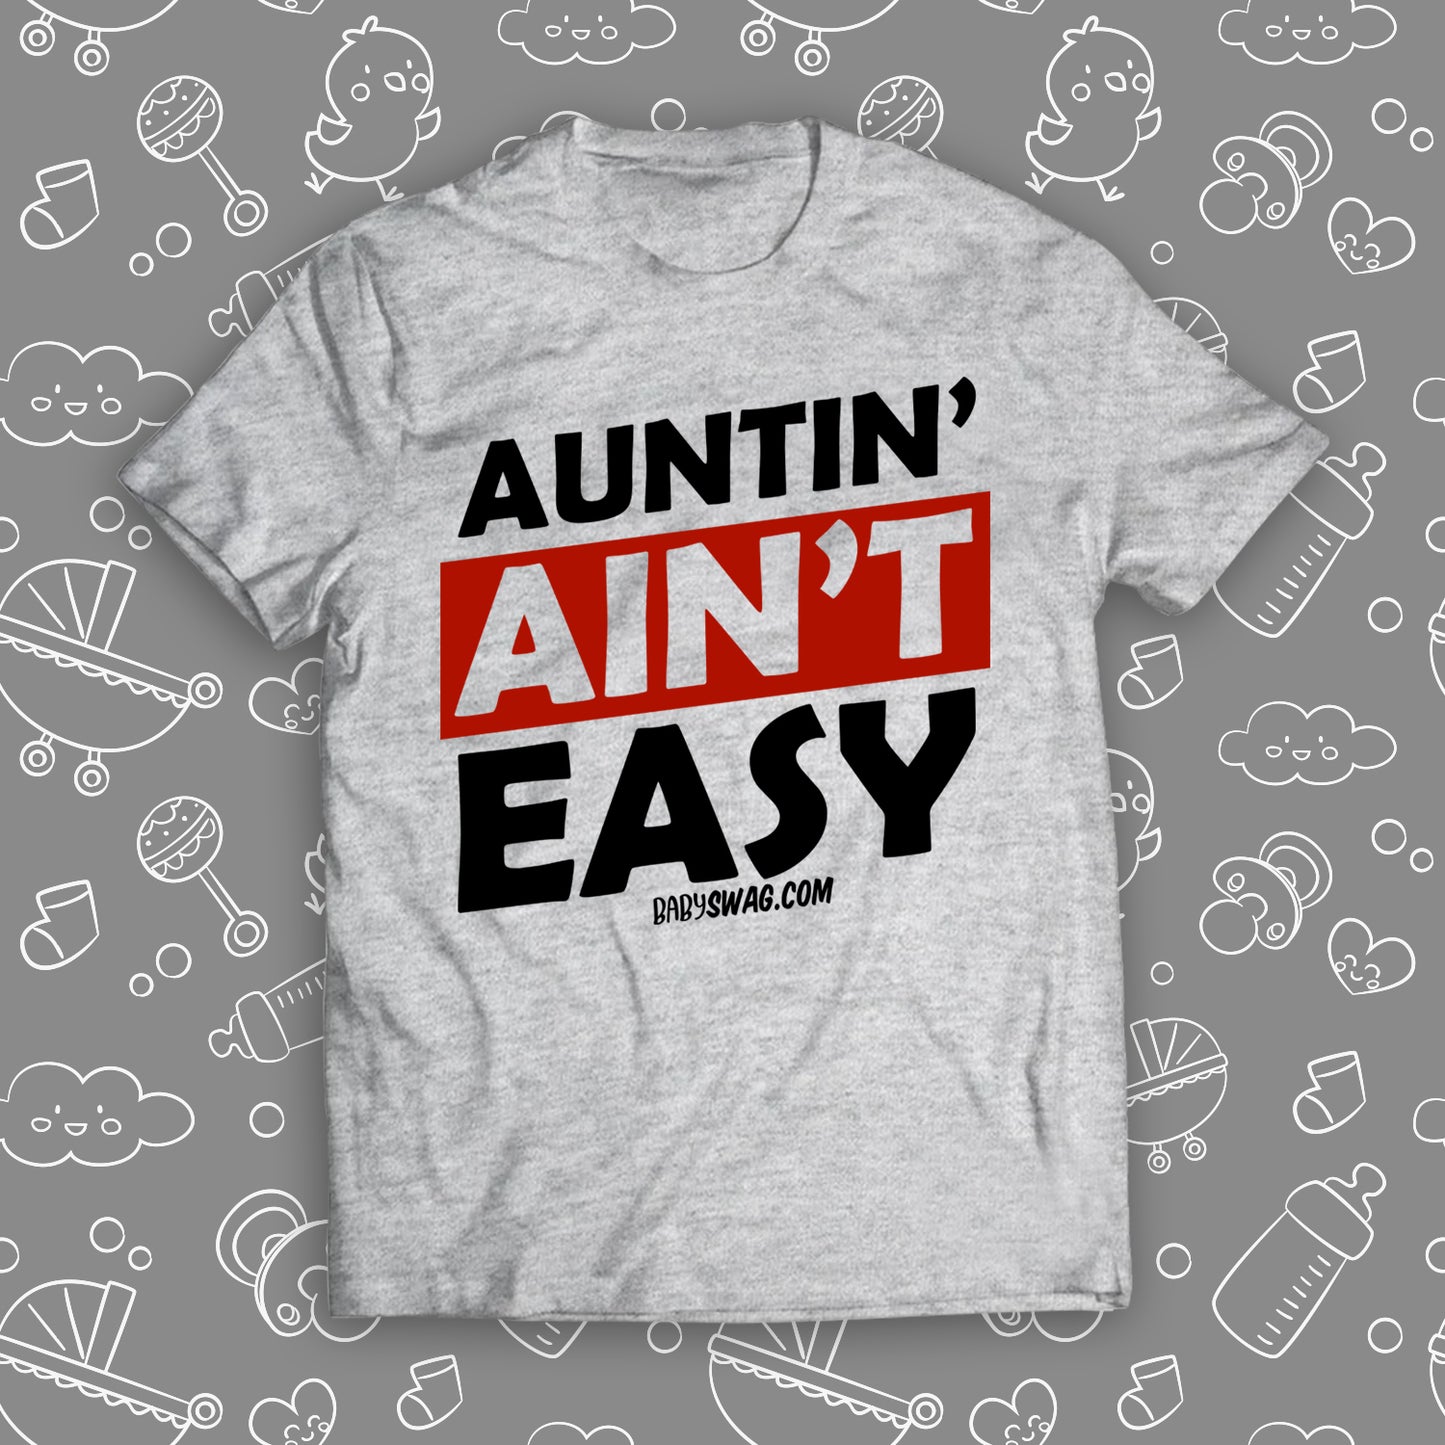 Auntin' Ain't Easy